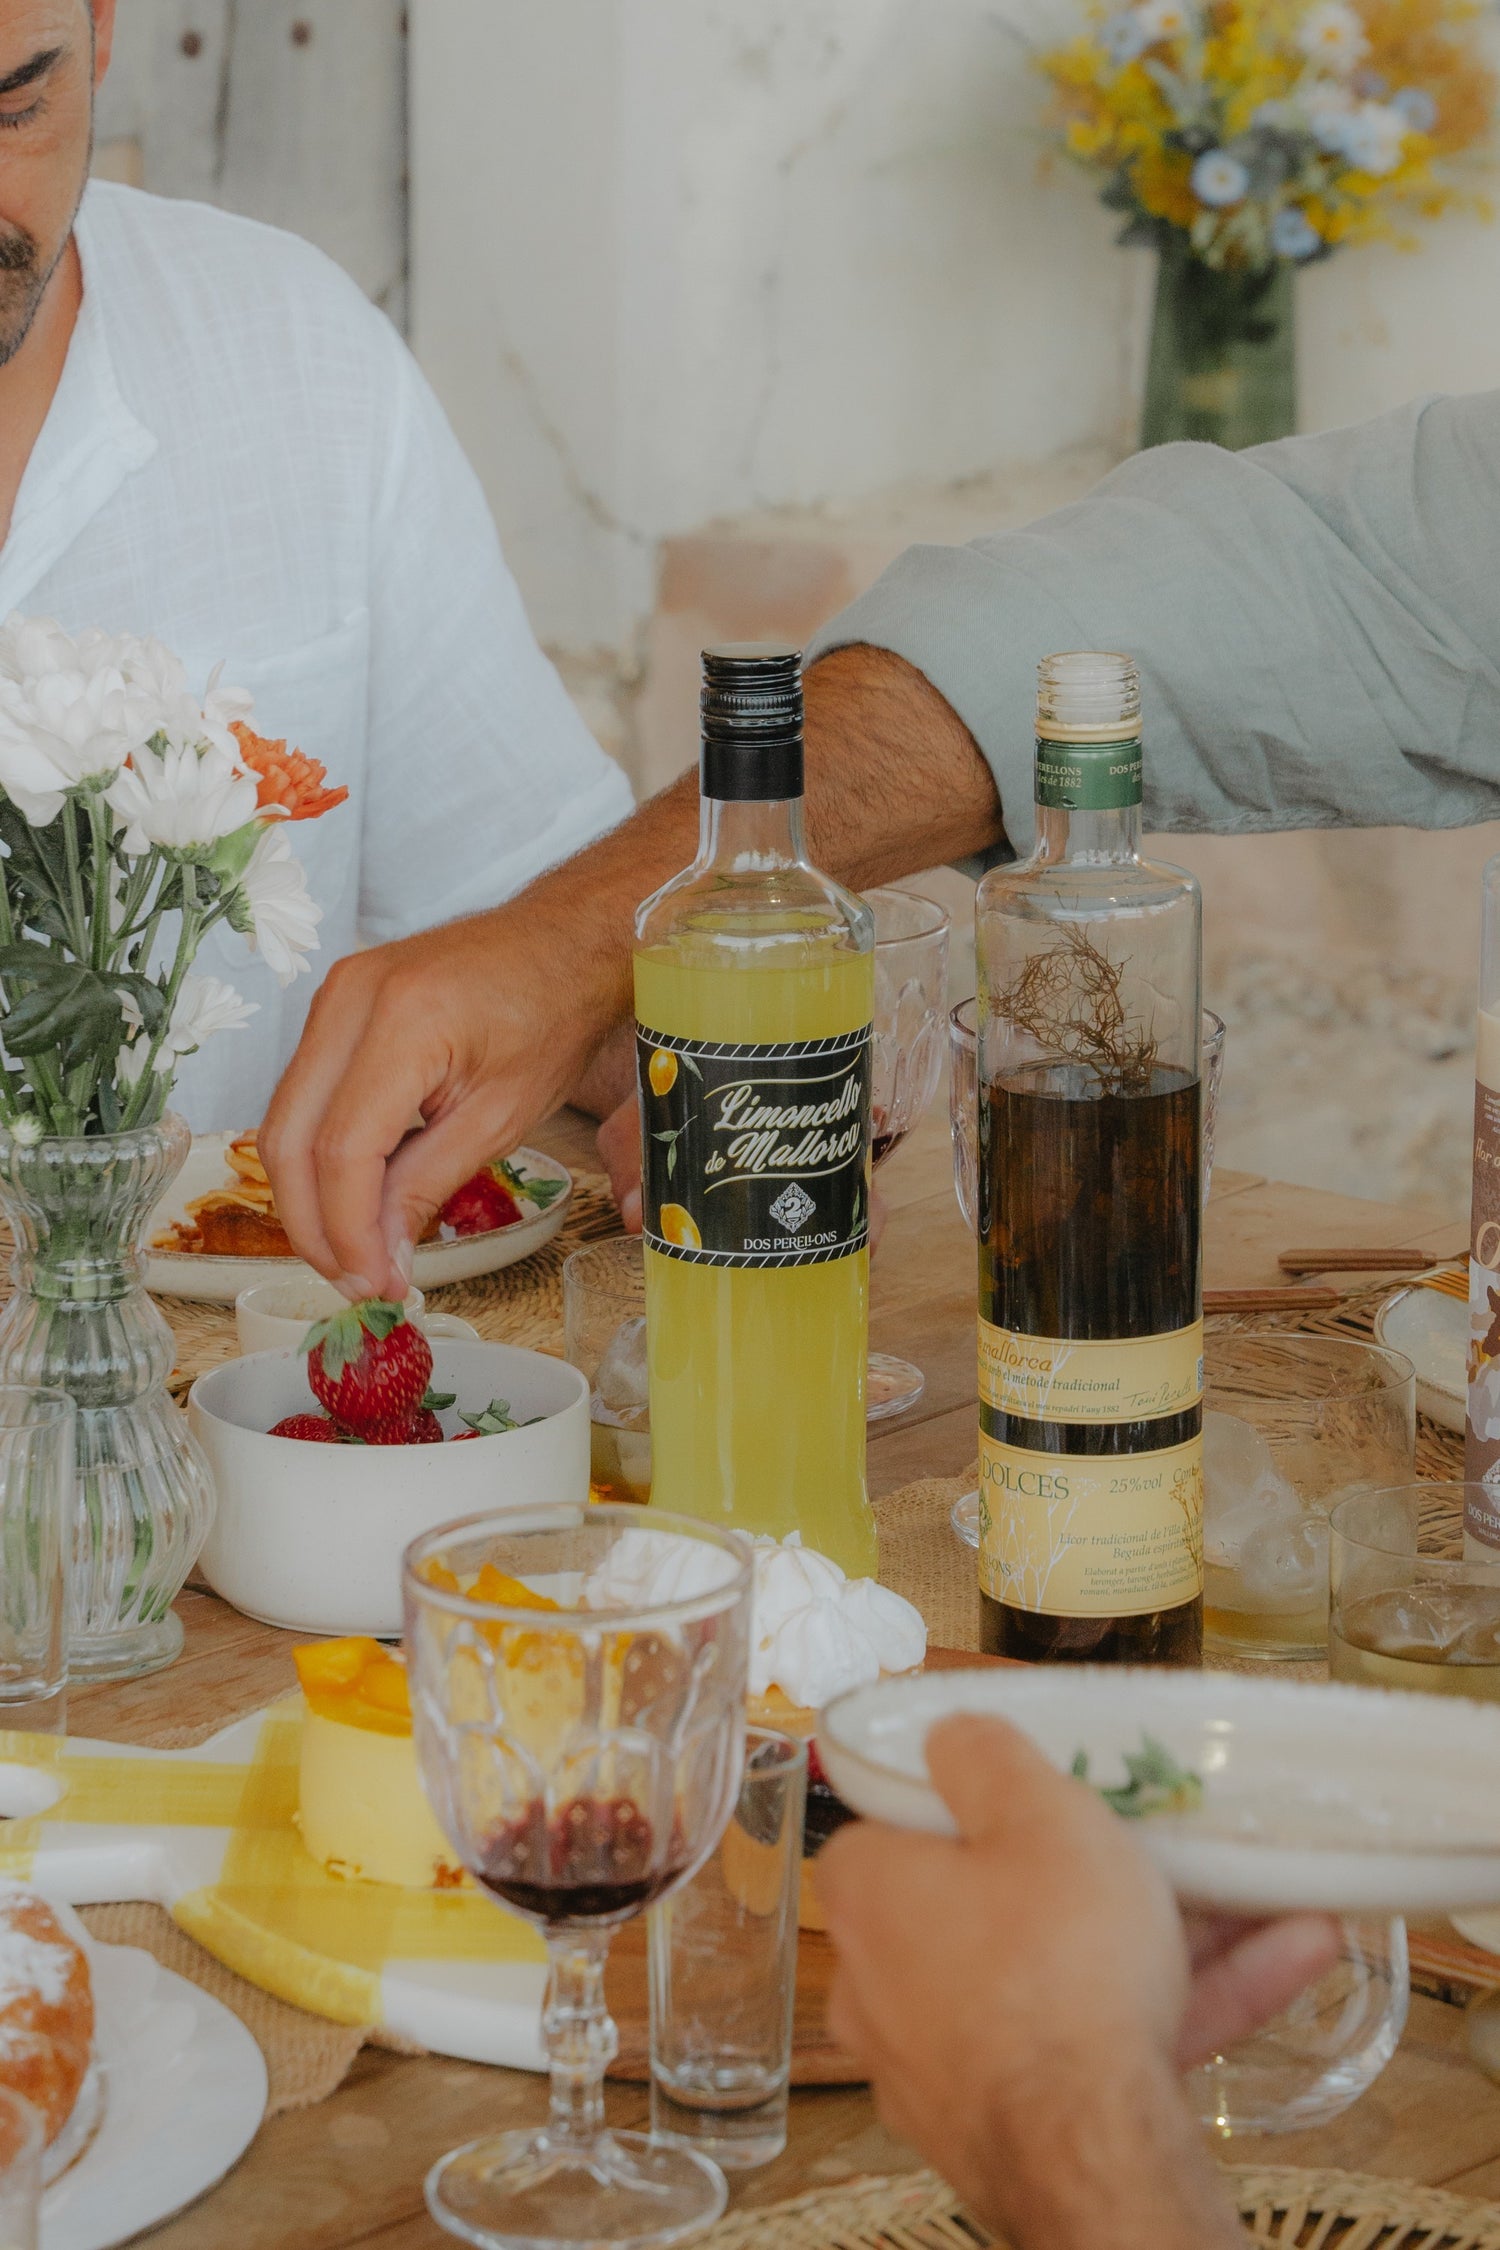 Dos Perellons es una empresa de fabricación de licores, tanto tradicionales de Mallorca como de otros tipos